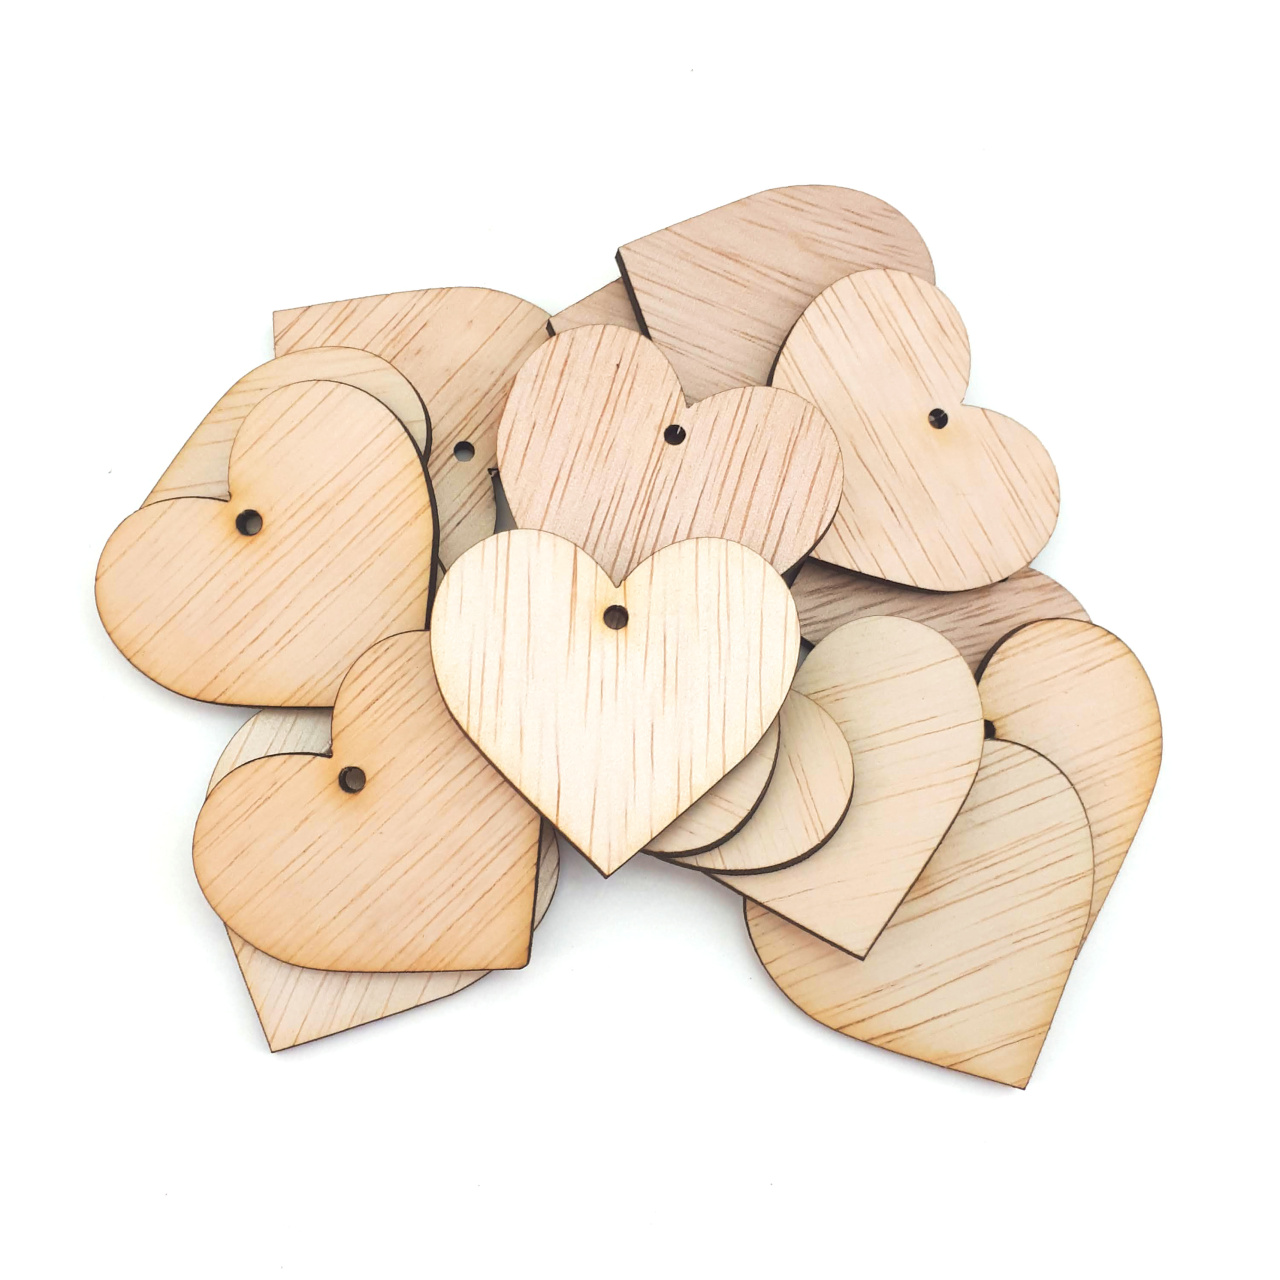 Inimă, 7,5×7 cm, placaj lemn natur